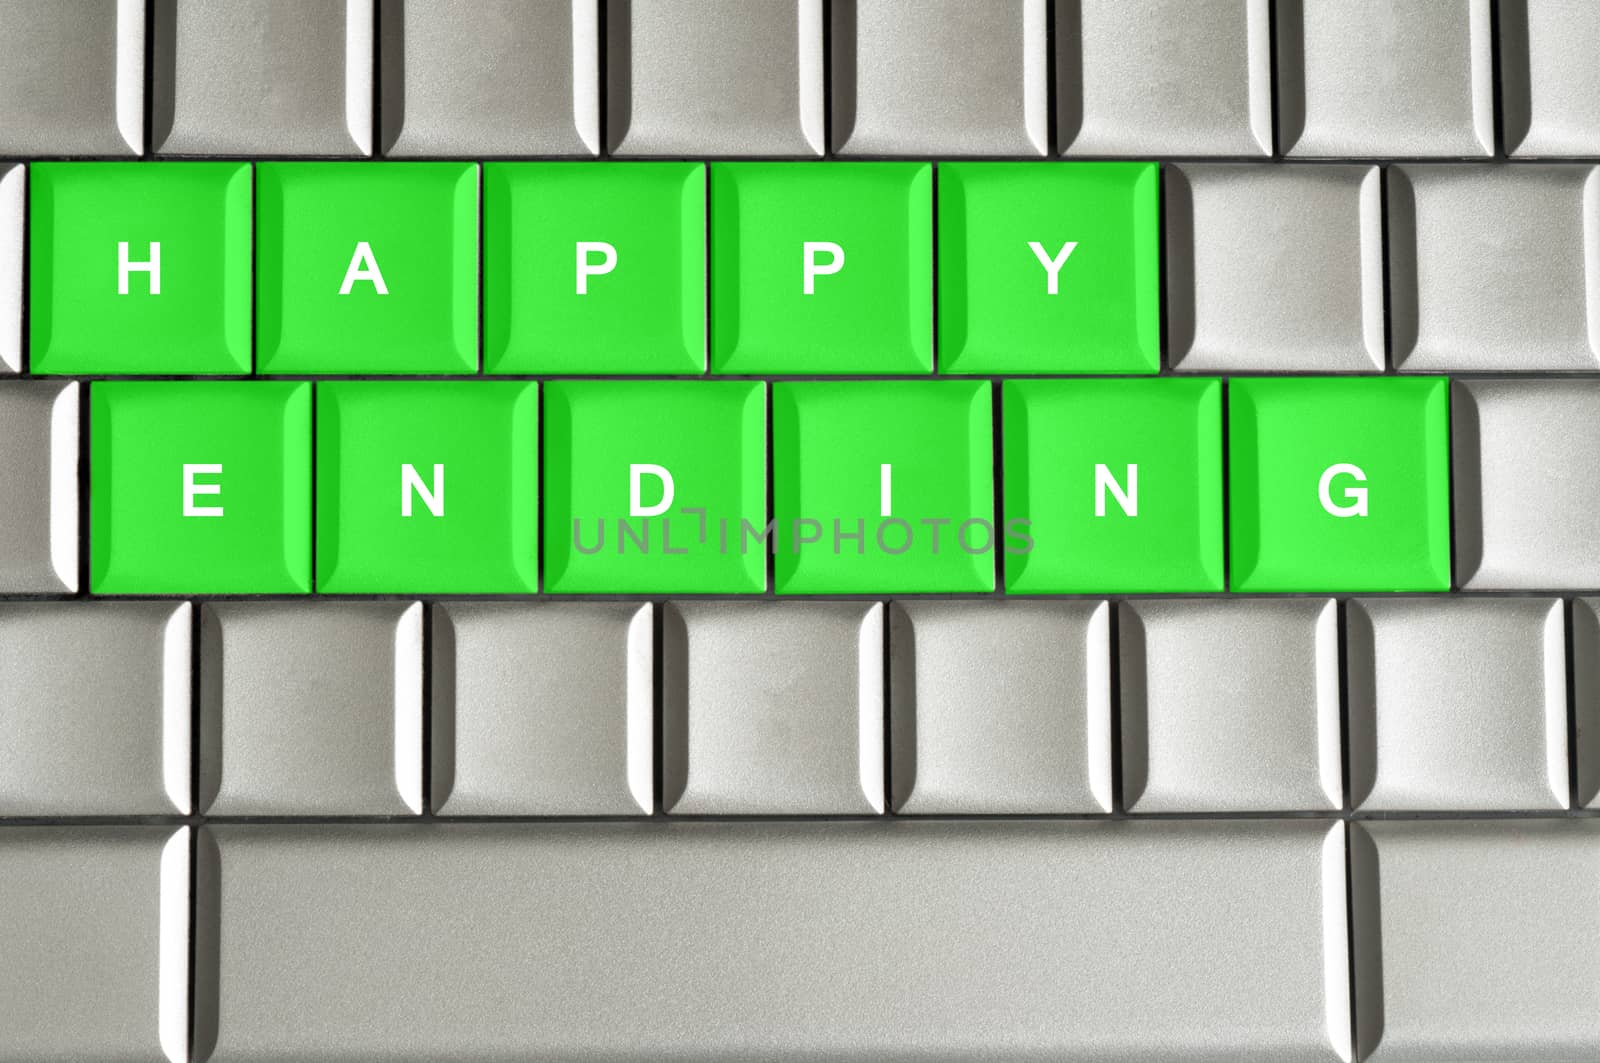 Happy ending spelled on a metallic keyboard by daoleduc